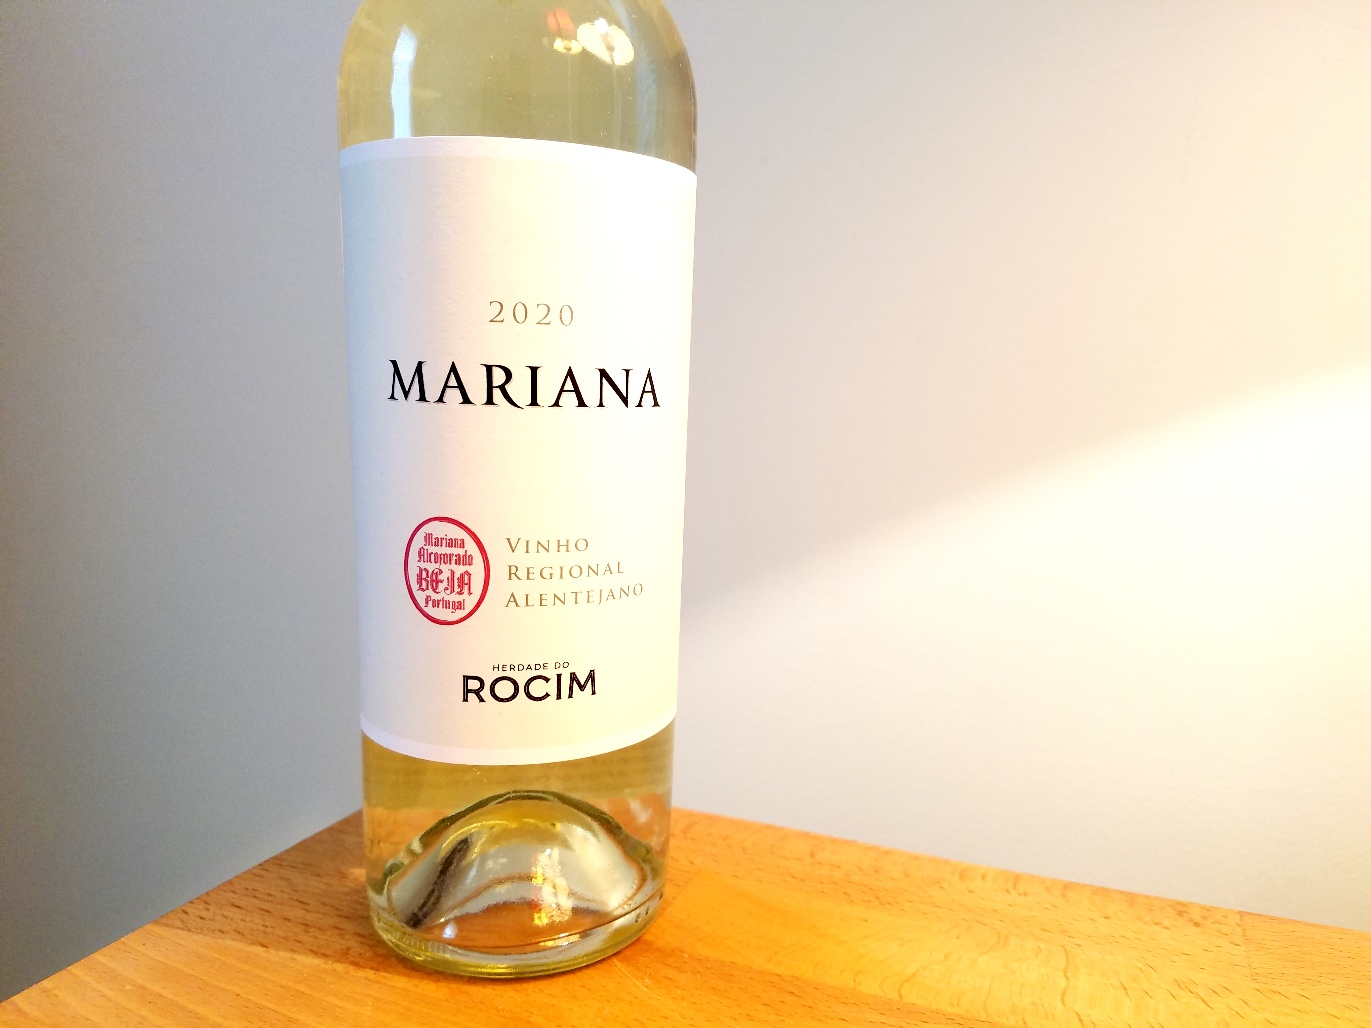 Herdade do Rocim, Mariana 2020, Vinho Regional Alentejano, Portugal, Wine Casual